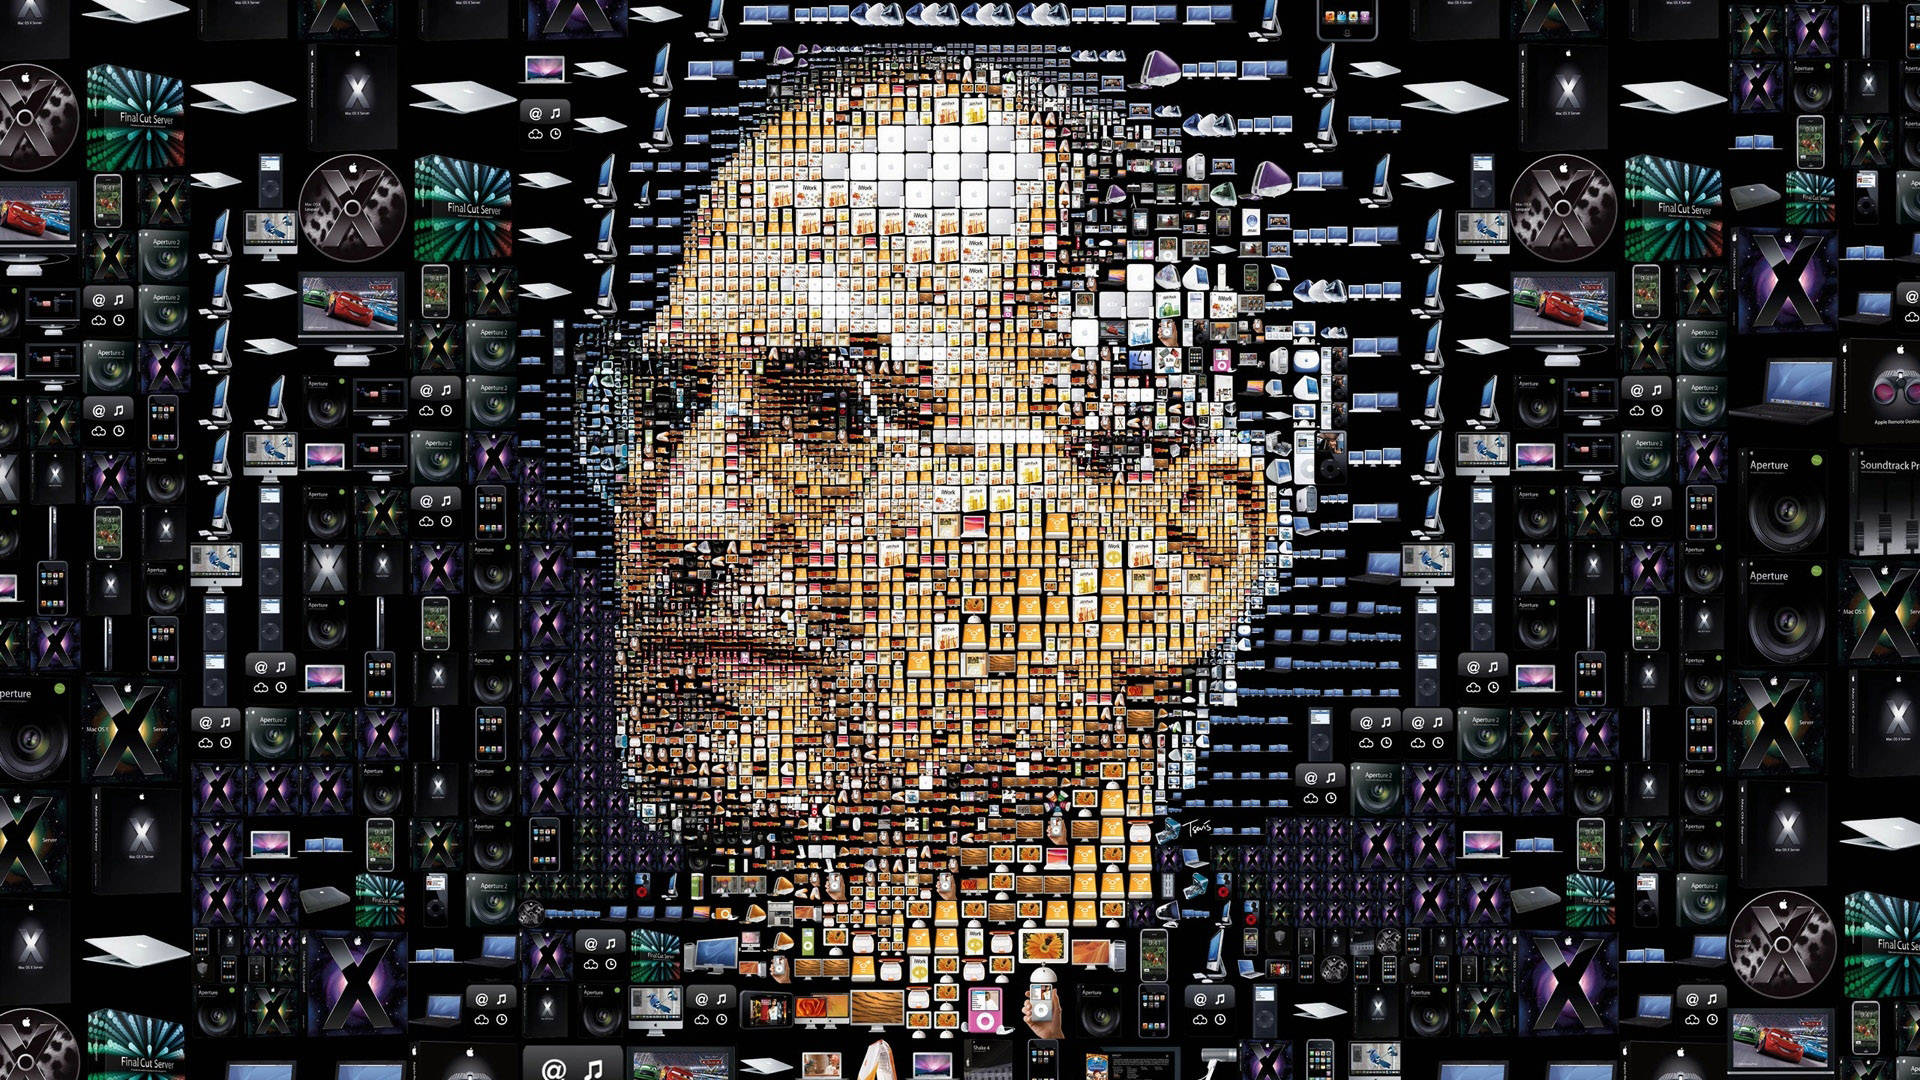 Steve Jobs Mosaic Engineering Wallpaper